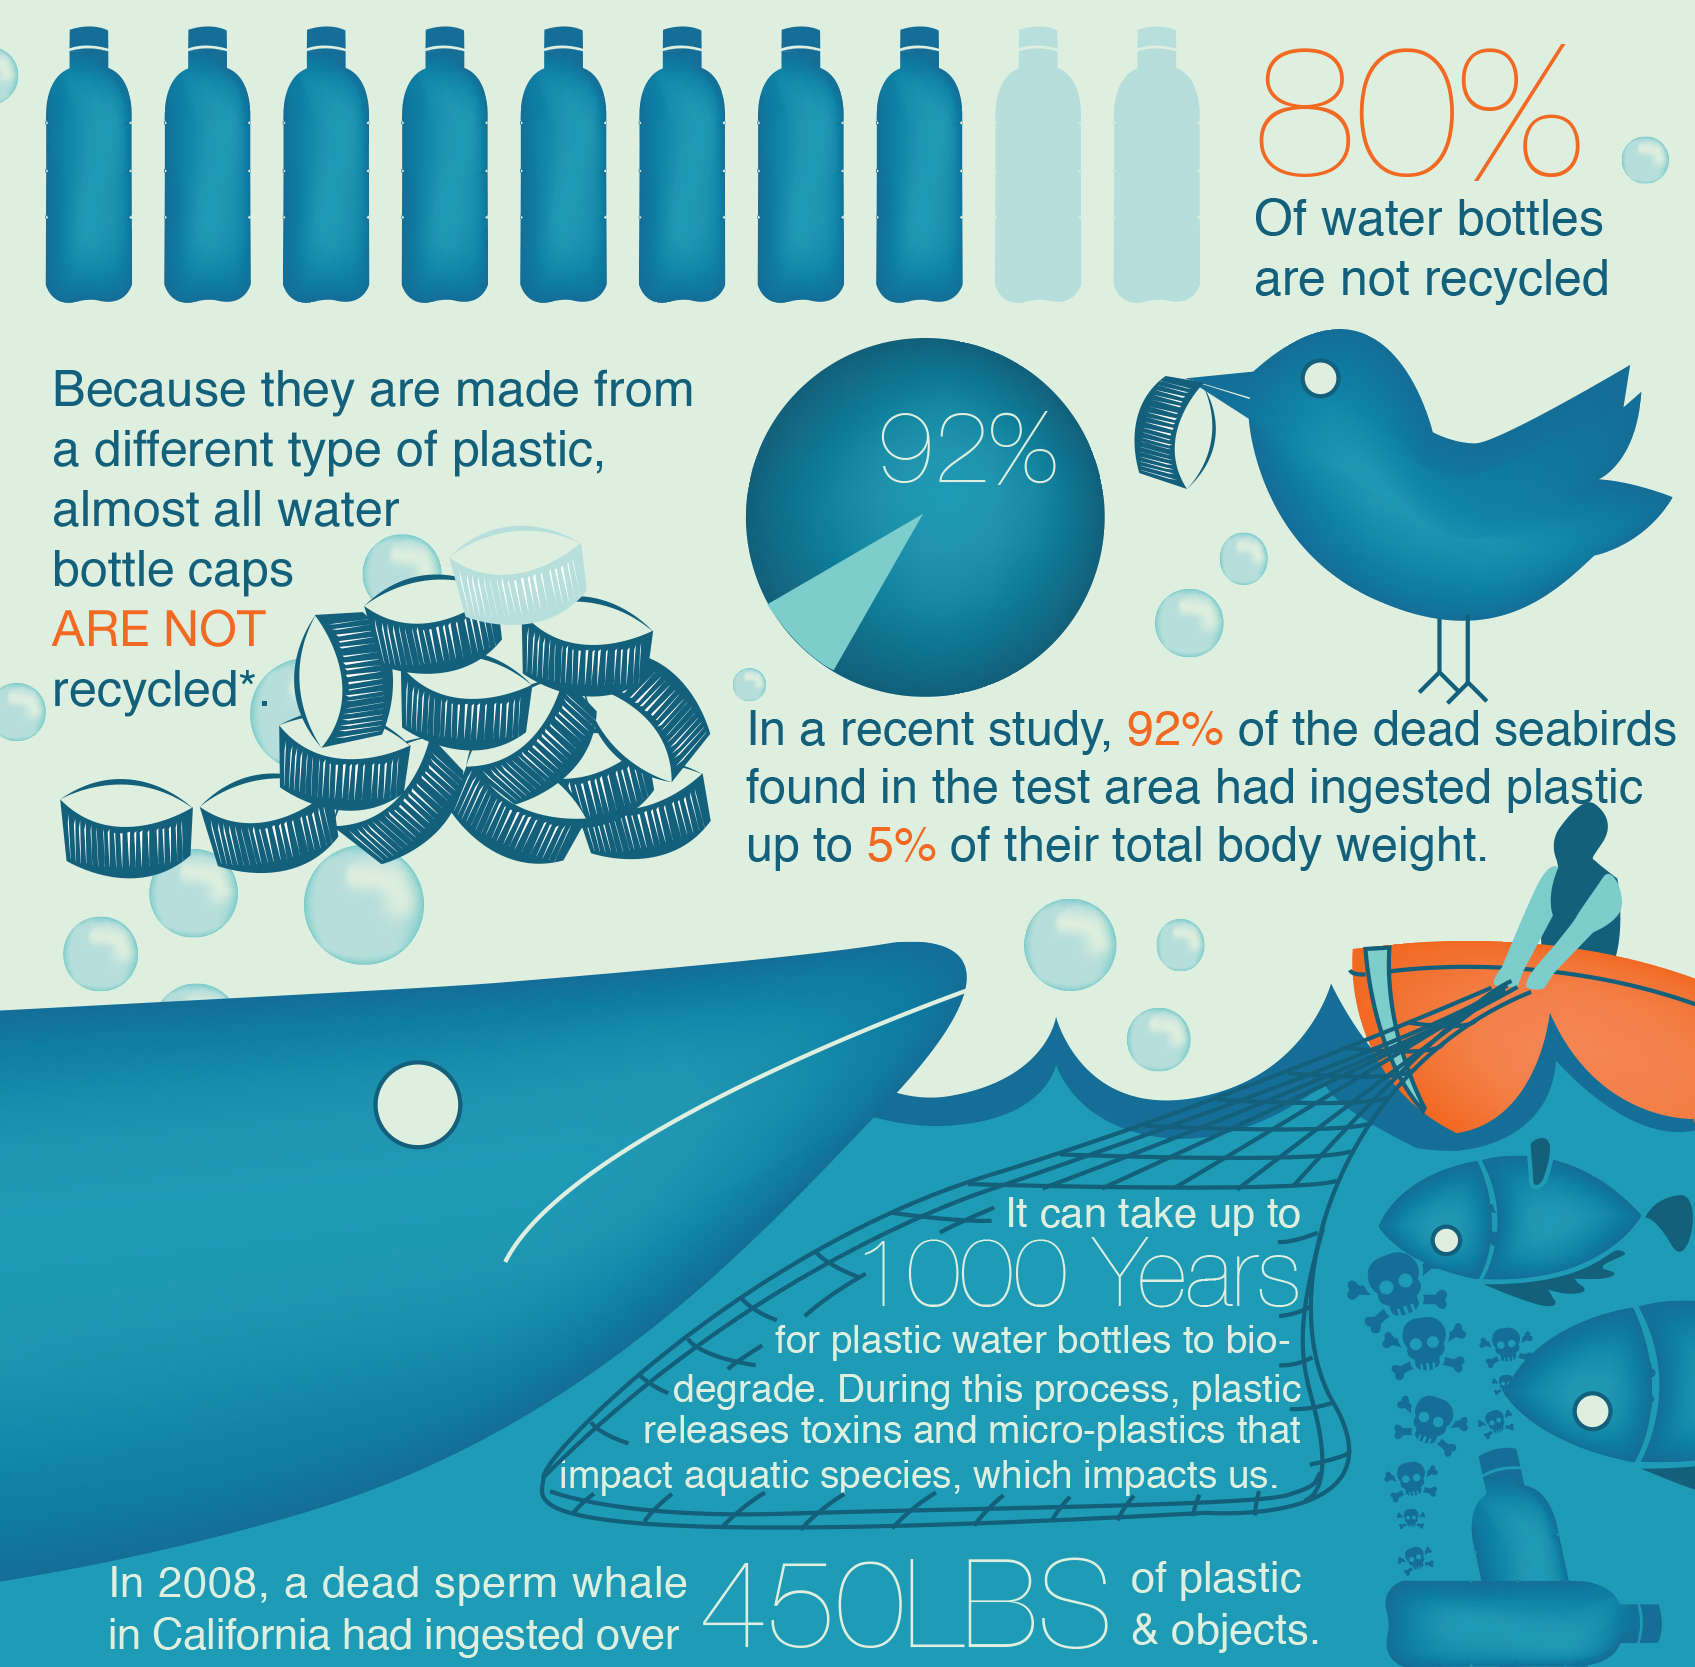 Benefits of Reusable Water Bottles